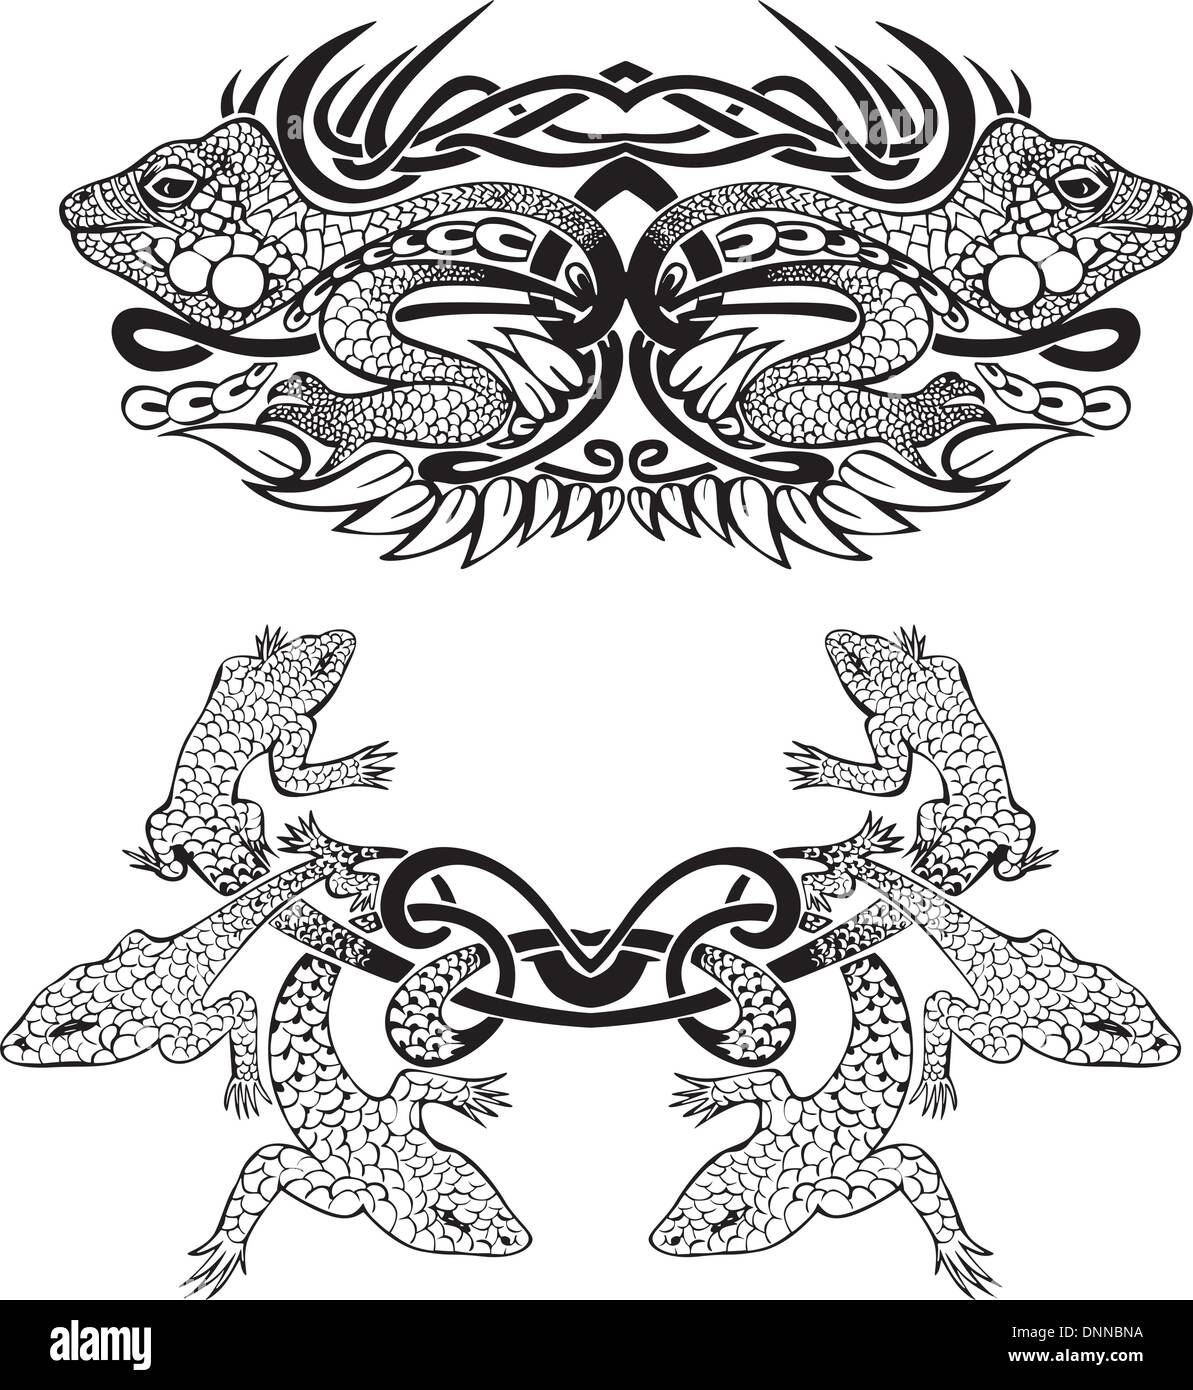 Stilisierte symmetrische Vignette mit Eidechsen. Vektor-Illustration EPS8 Stock Vektor